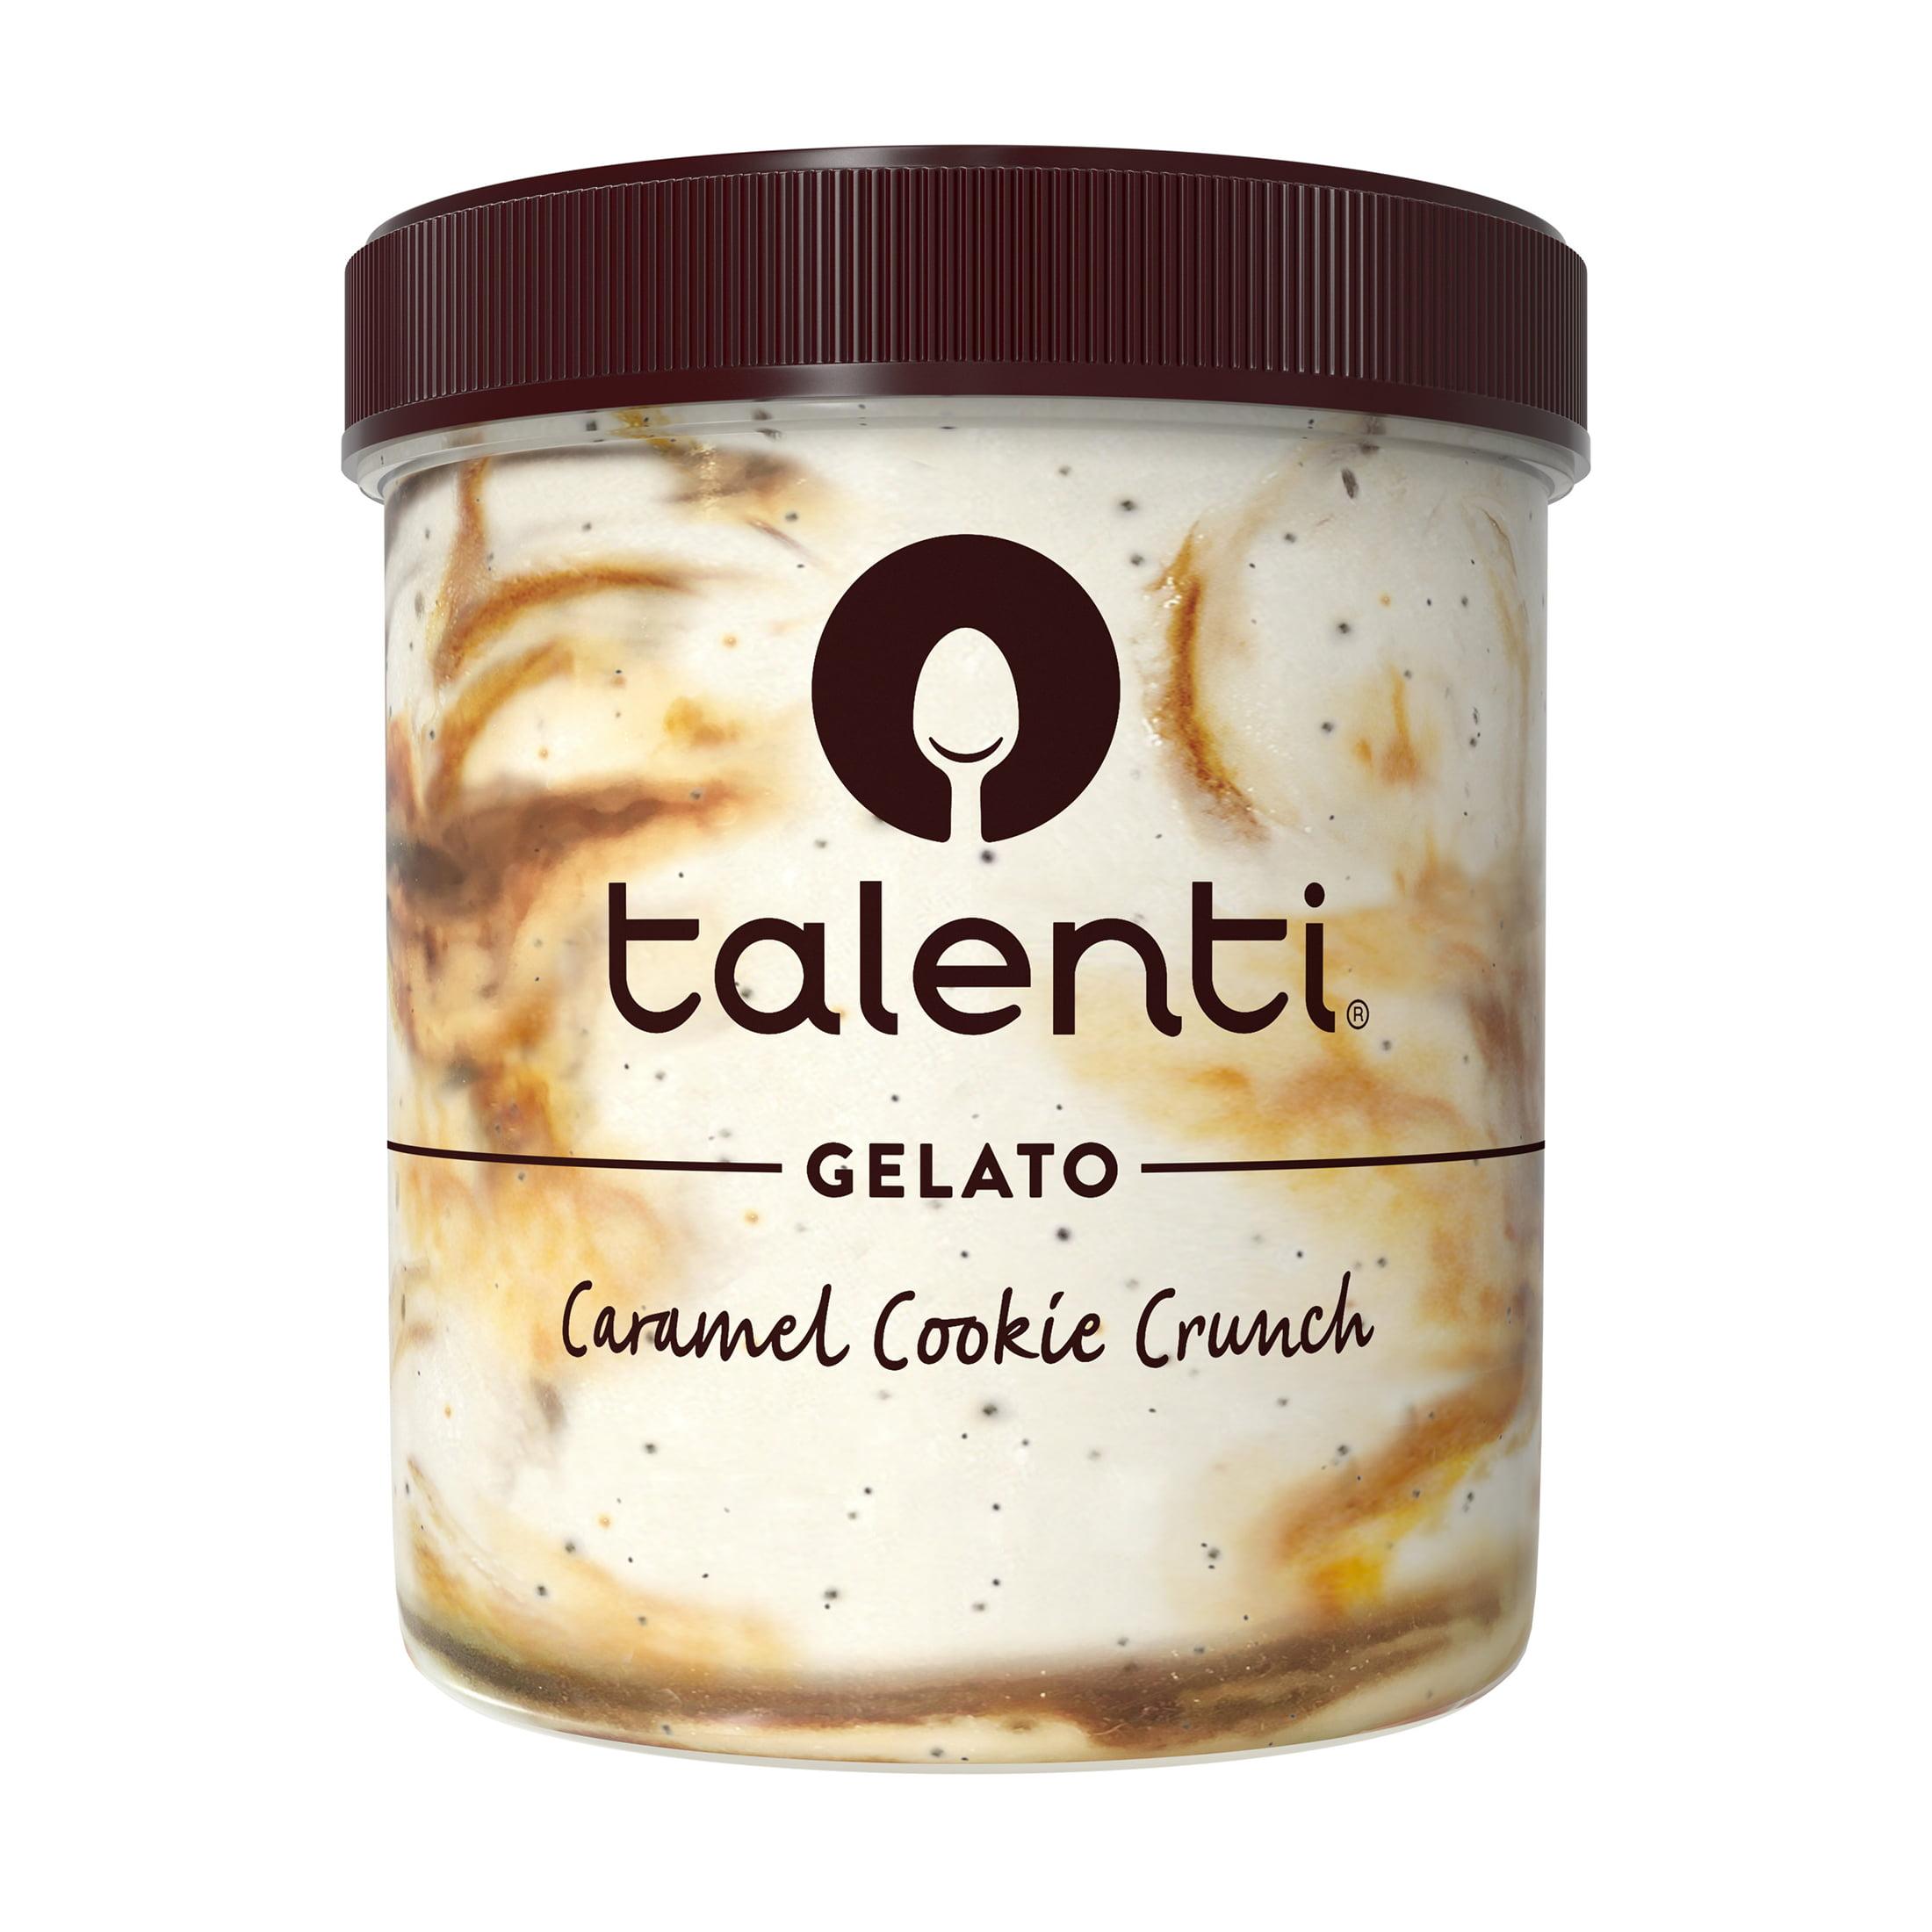 Talenti Gelato Non-GMO Caramel Cookie Crunch Frozen Dessert Kosher Milk, 16 oz - image 1 of 16